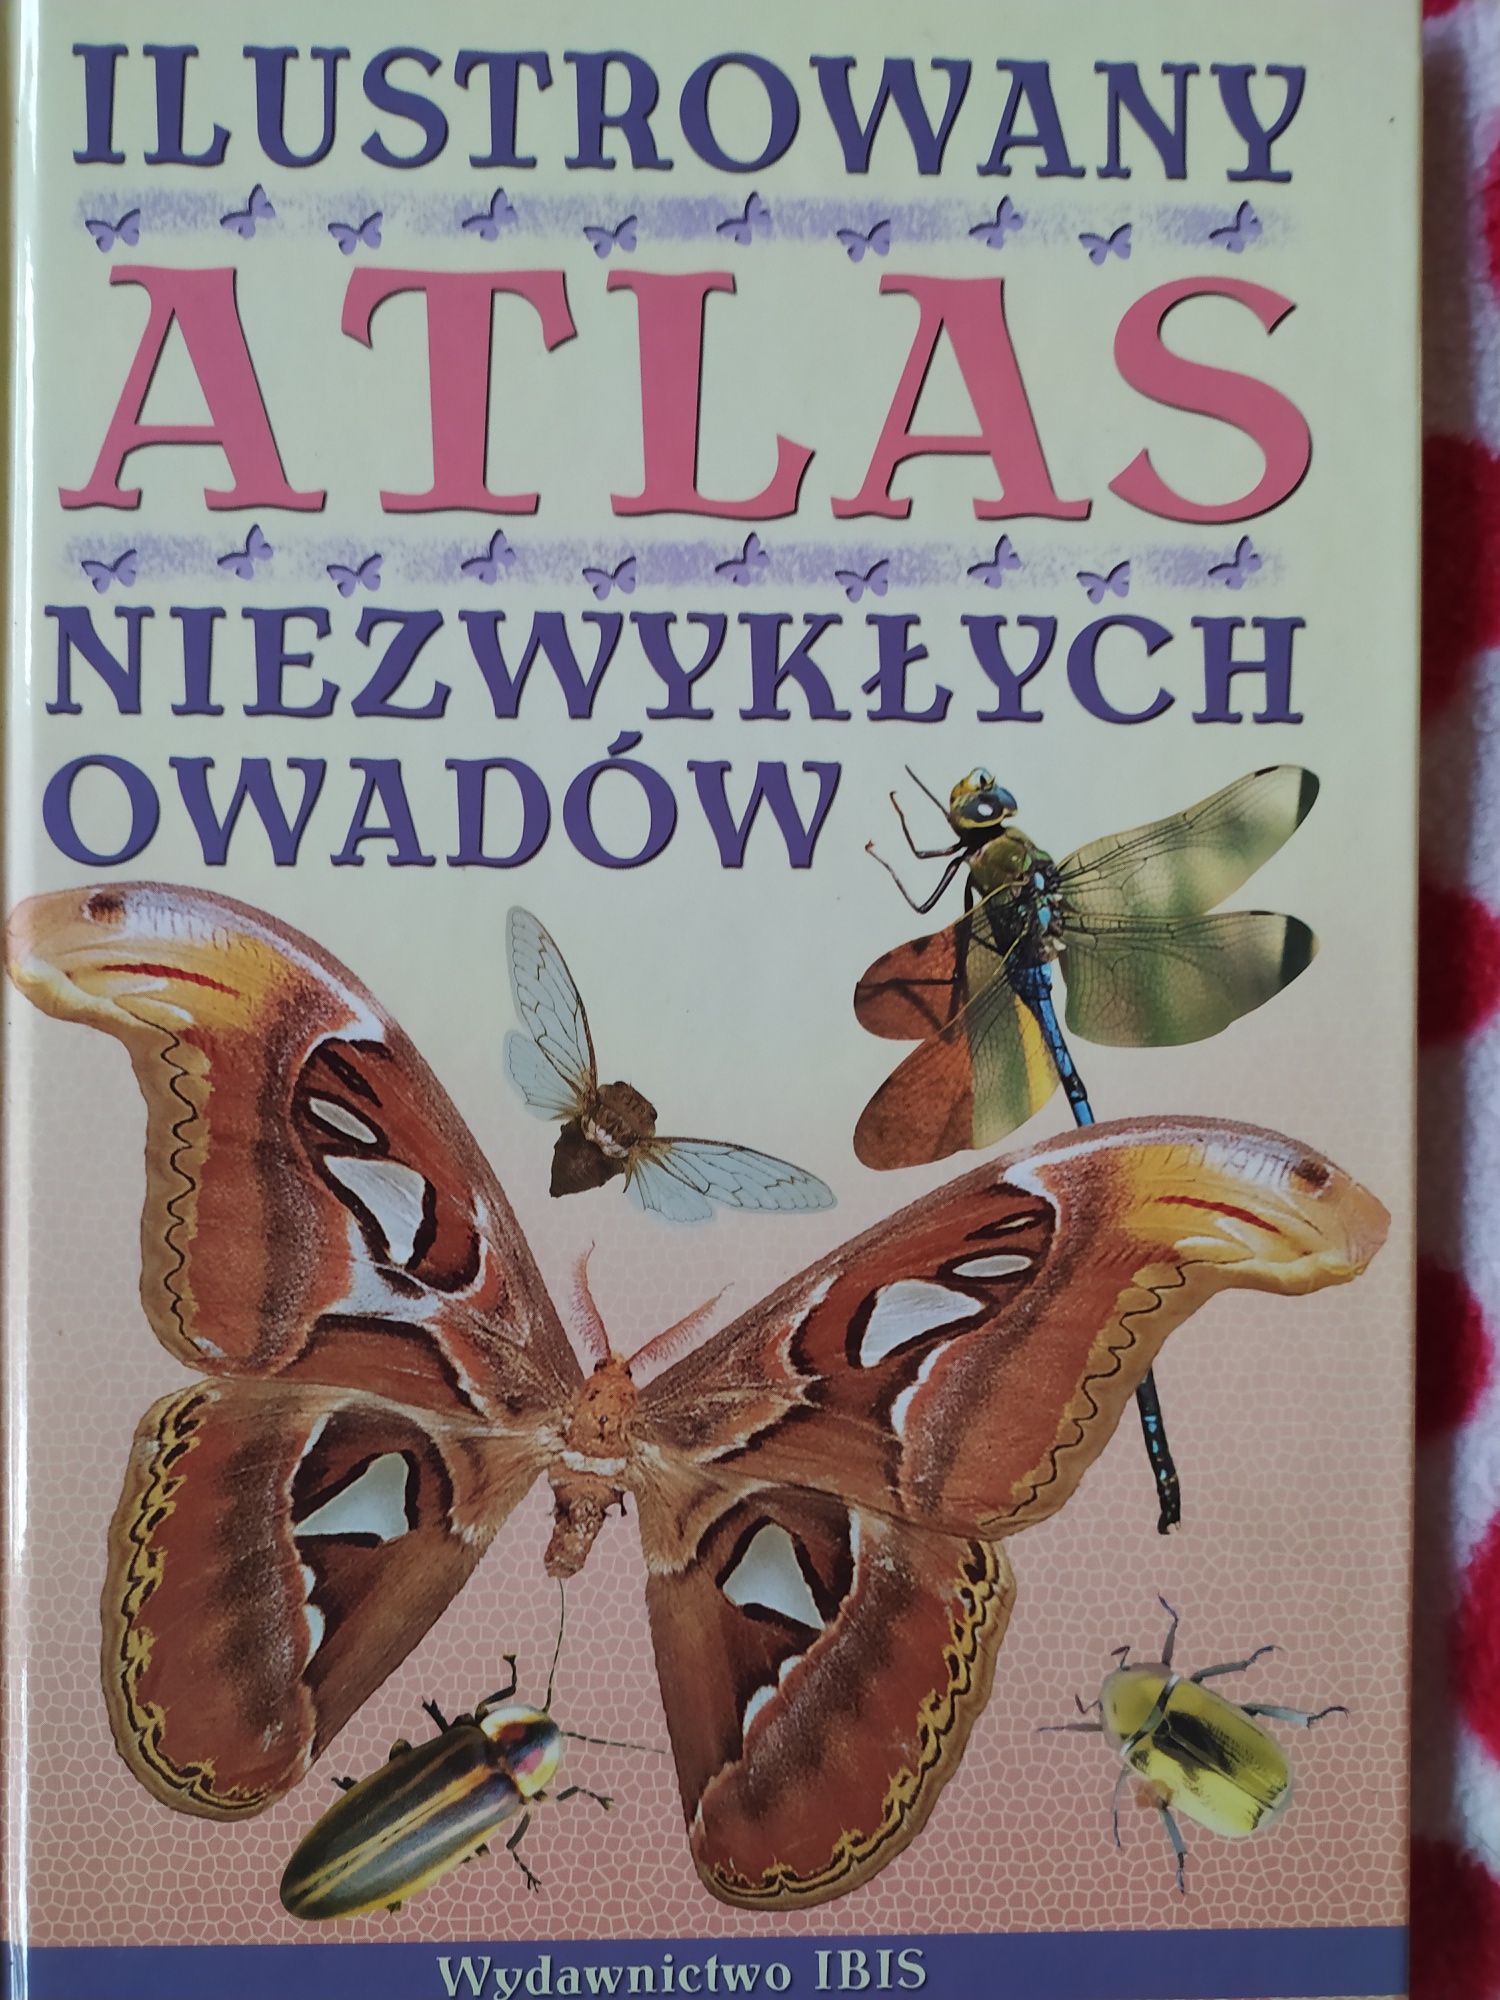 Atlas niezwykłych owadów.